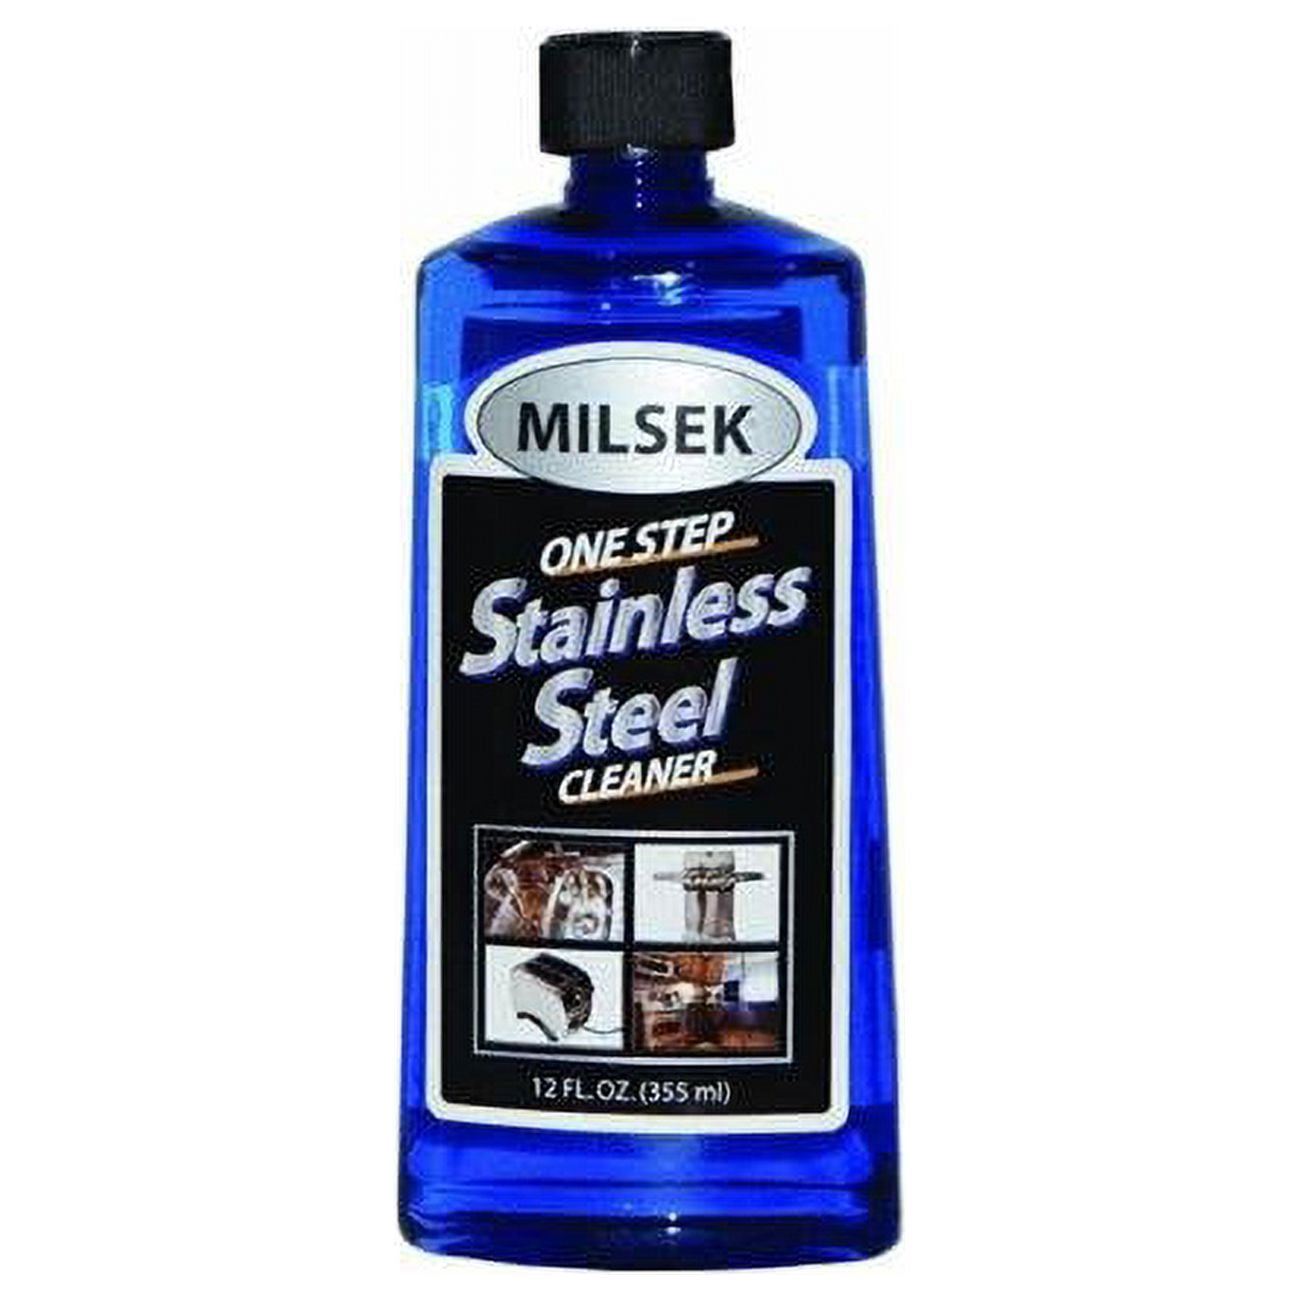 Milsek Stainless Steel Cleaner - Half Gallon Jug